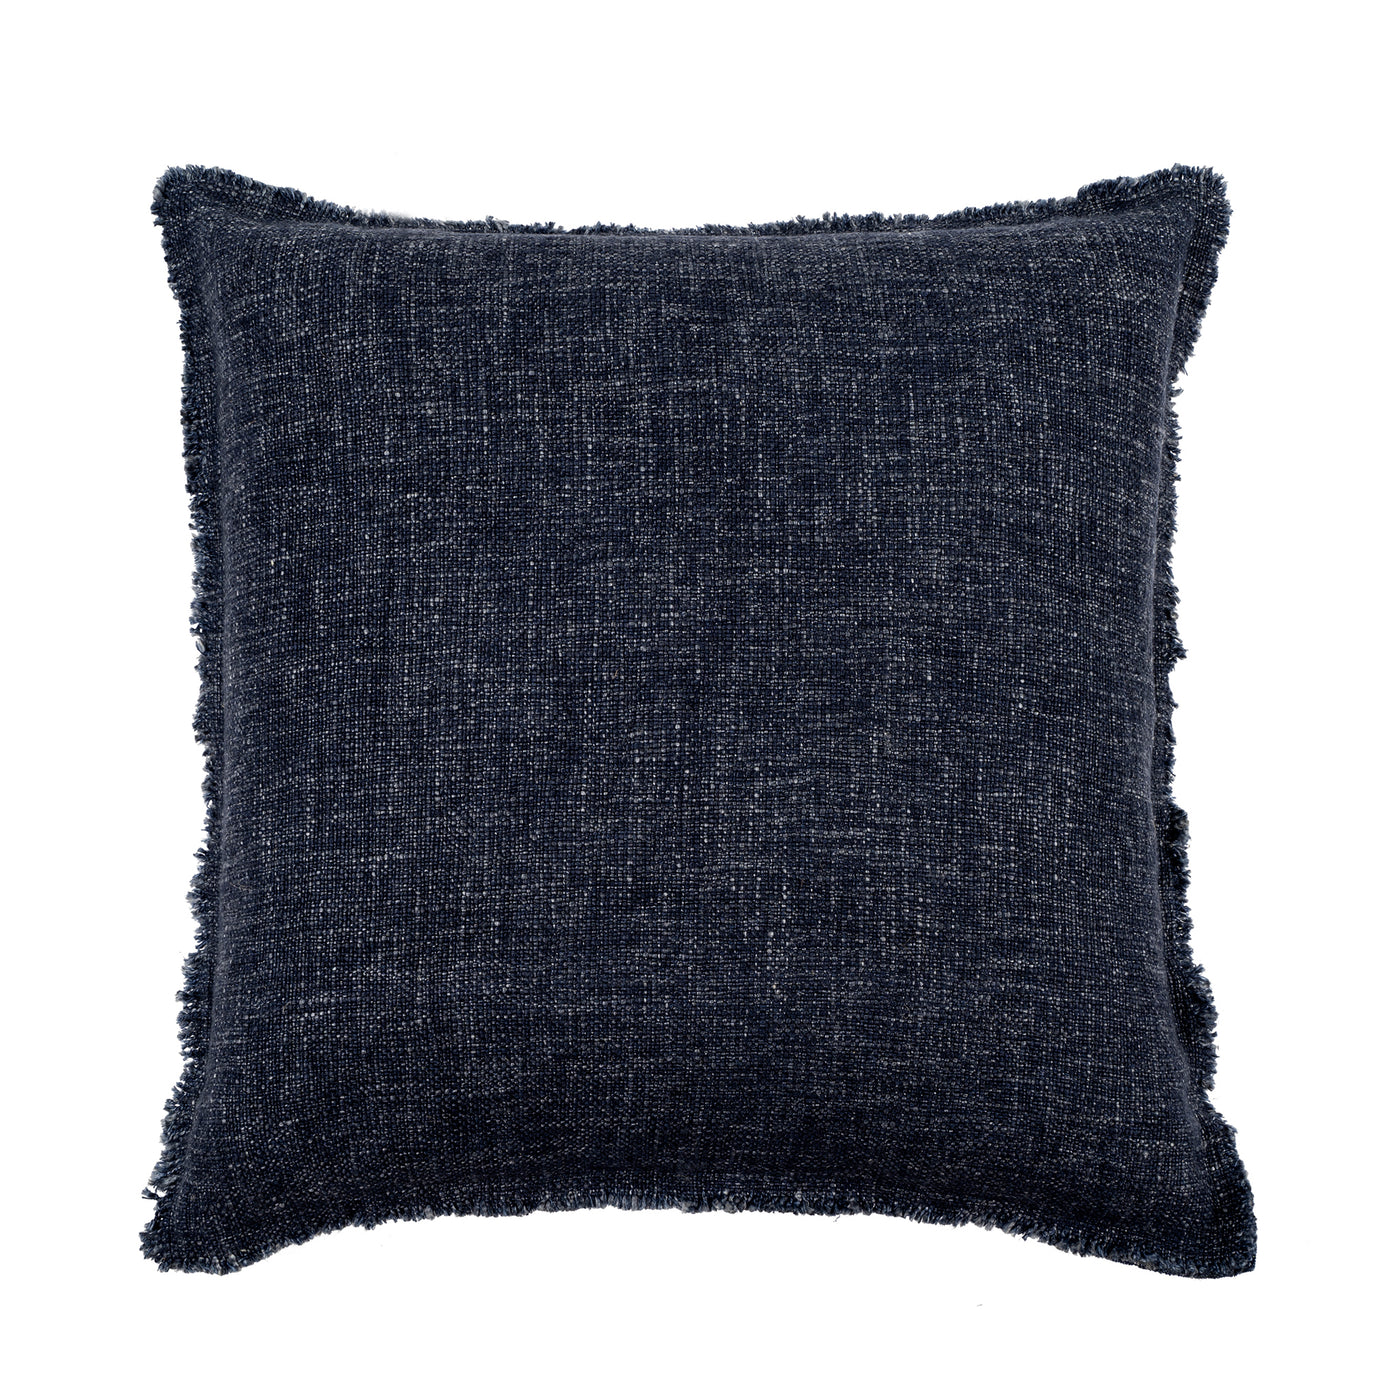 Frayed Edge Linen Pillow - Navy Blue